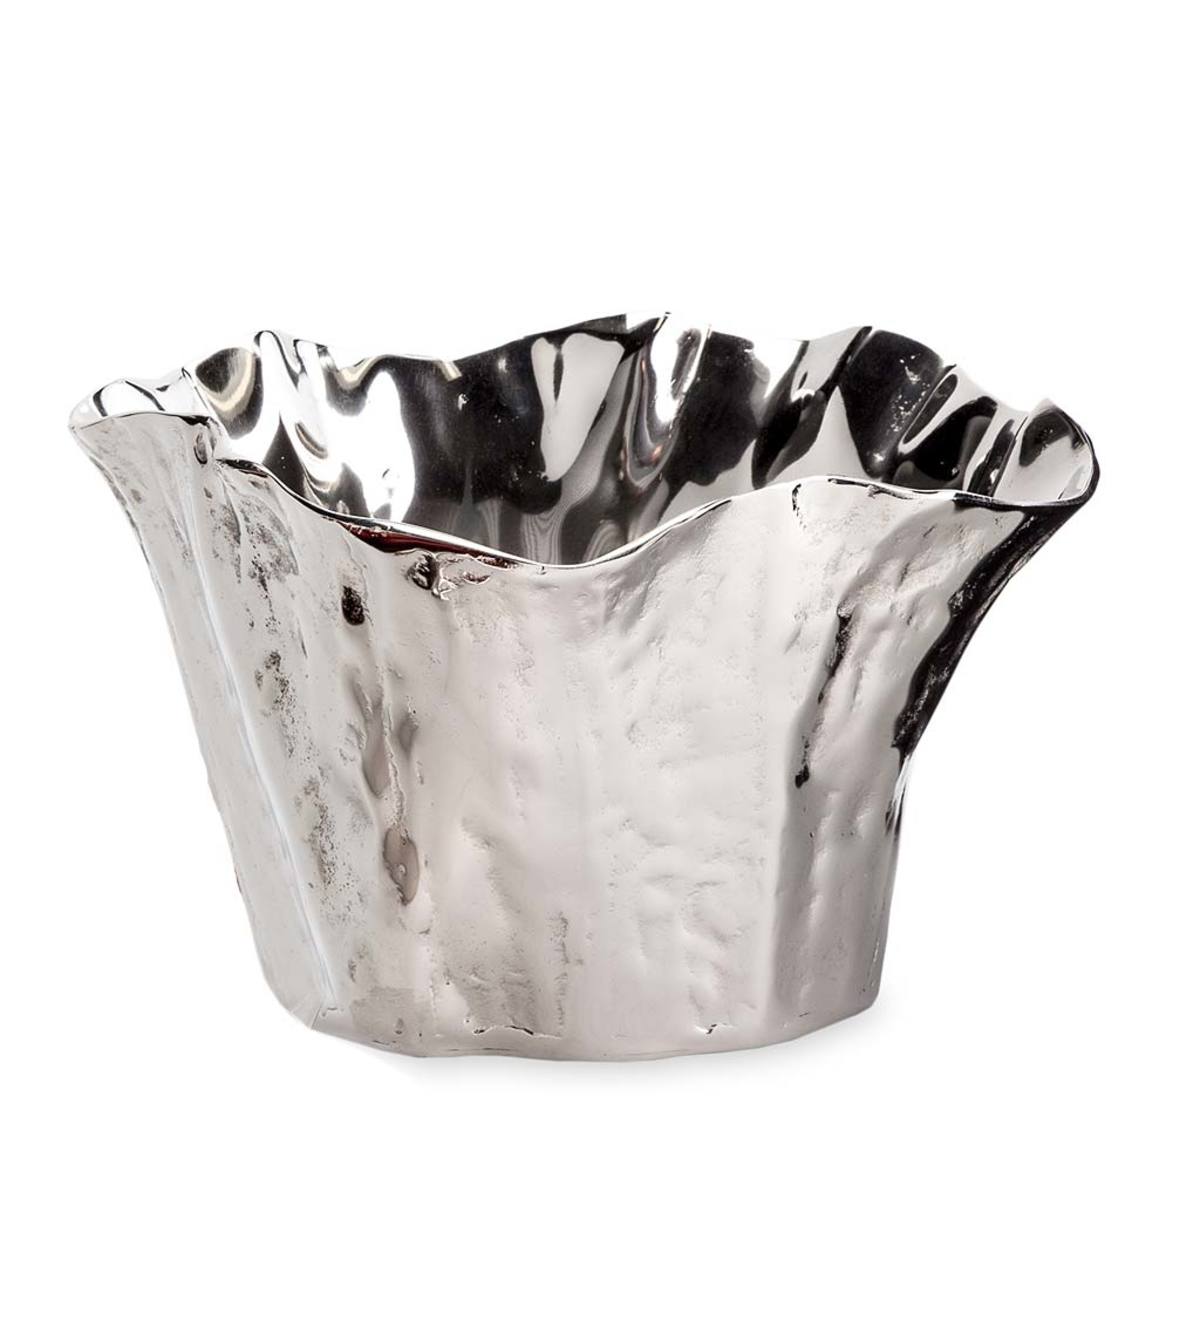 Organic Shaped Cast Aluminum Blooming Bowl